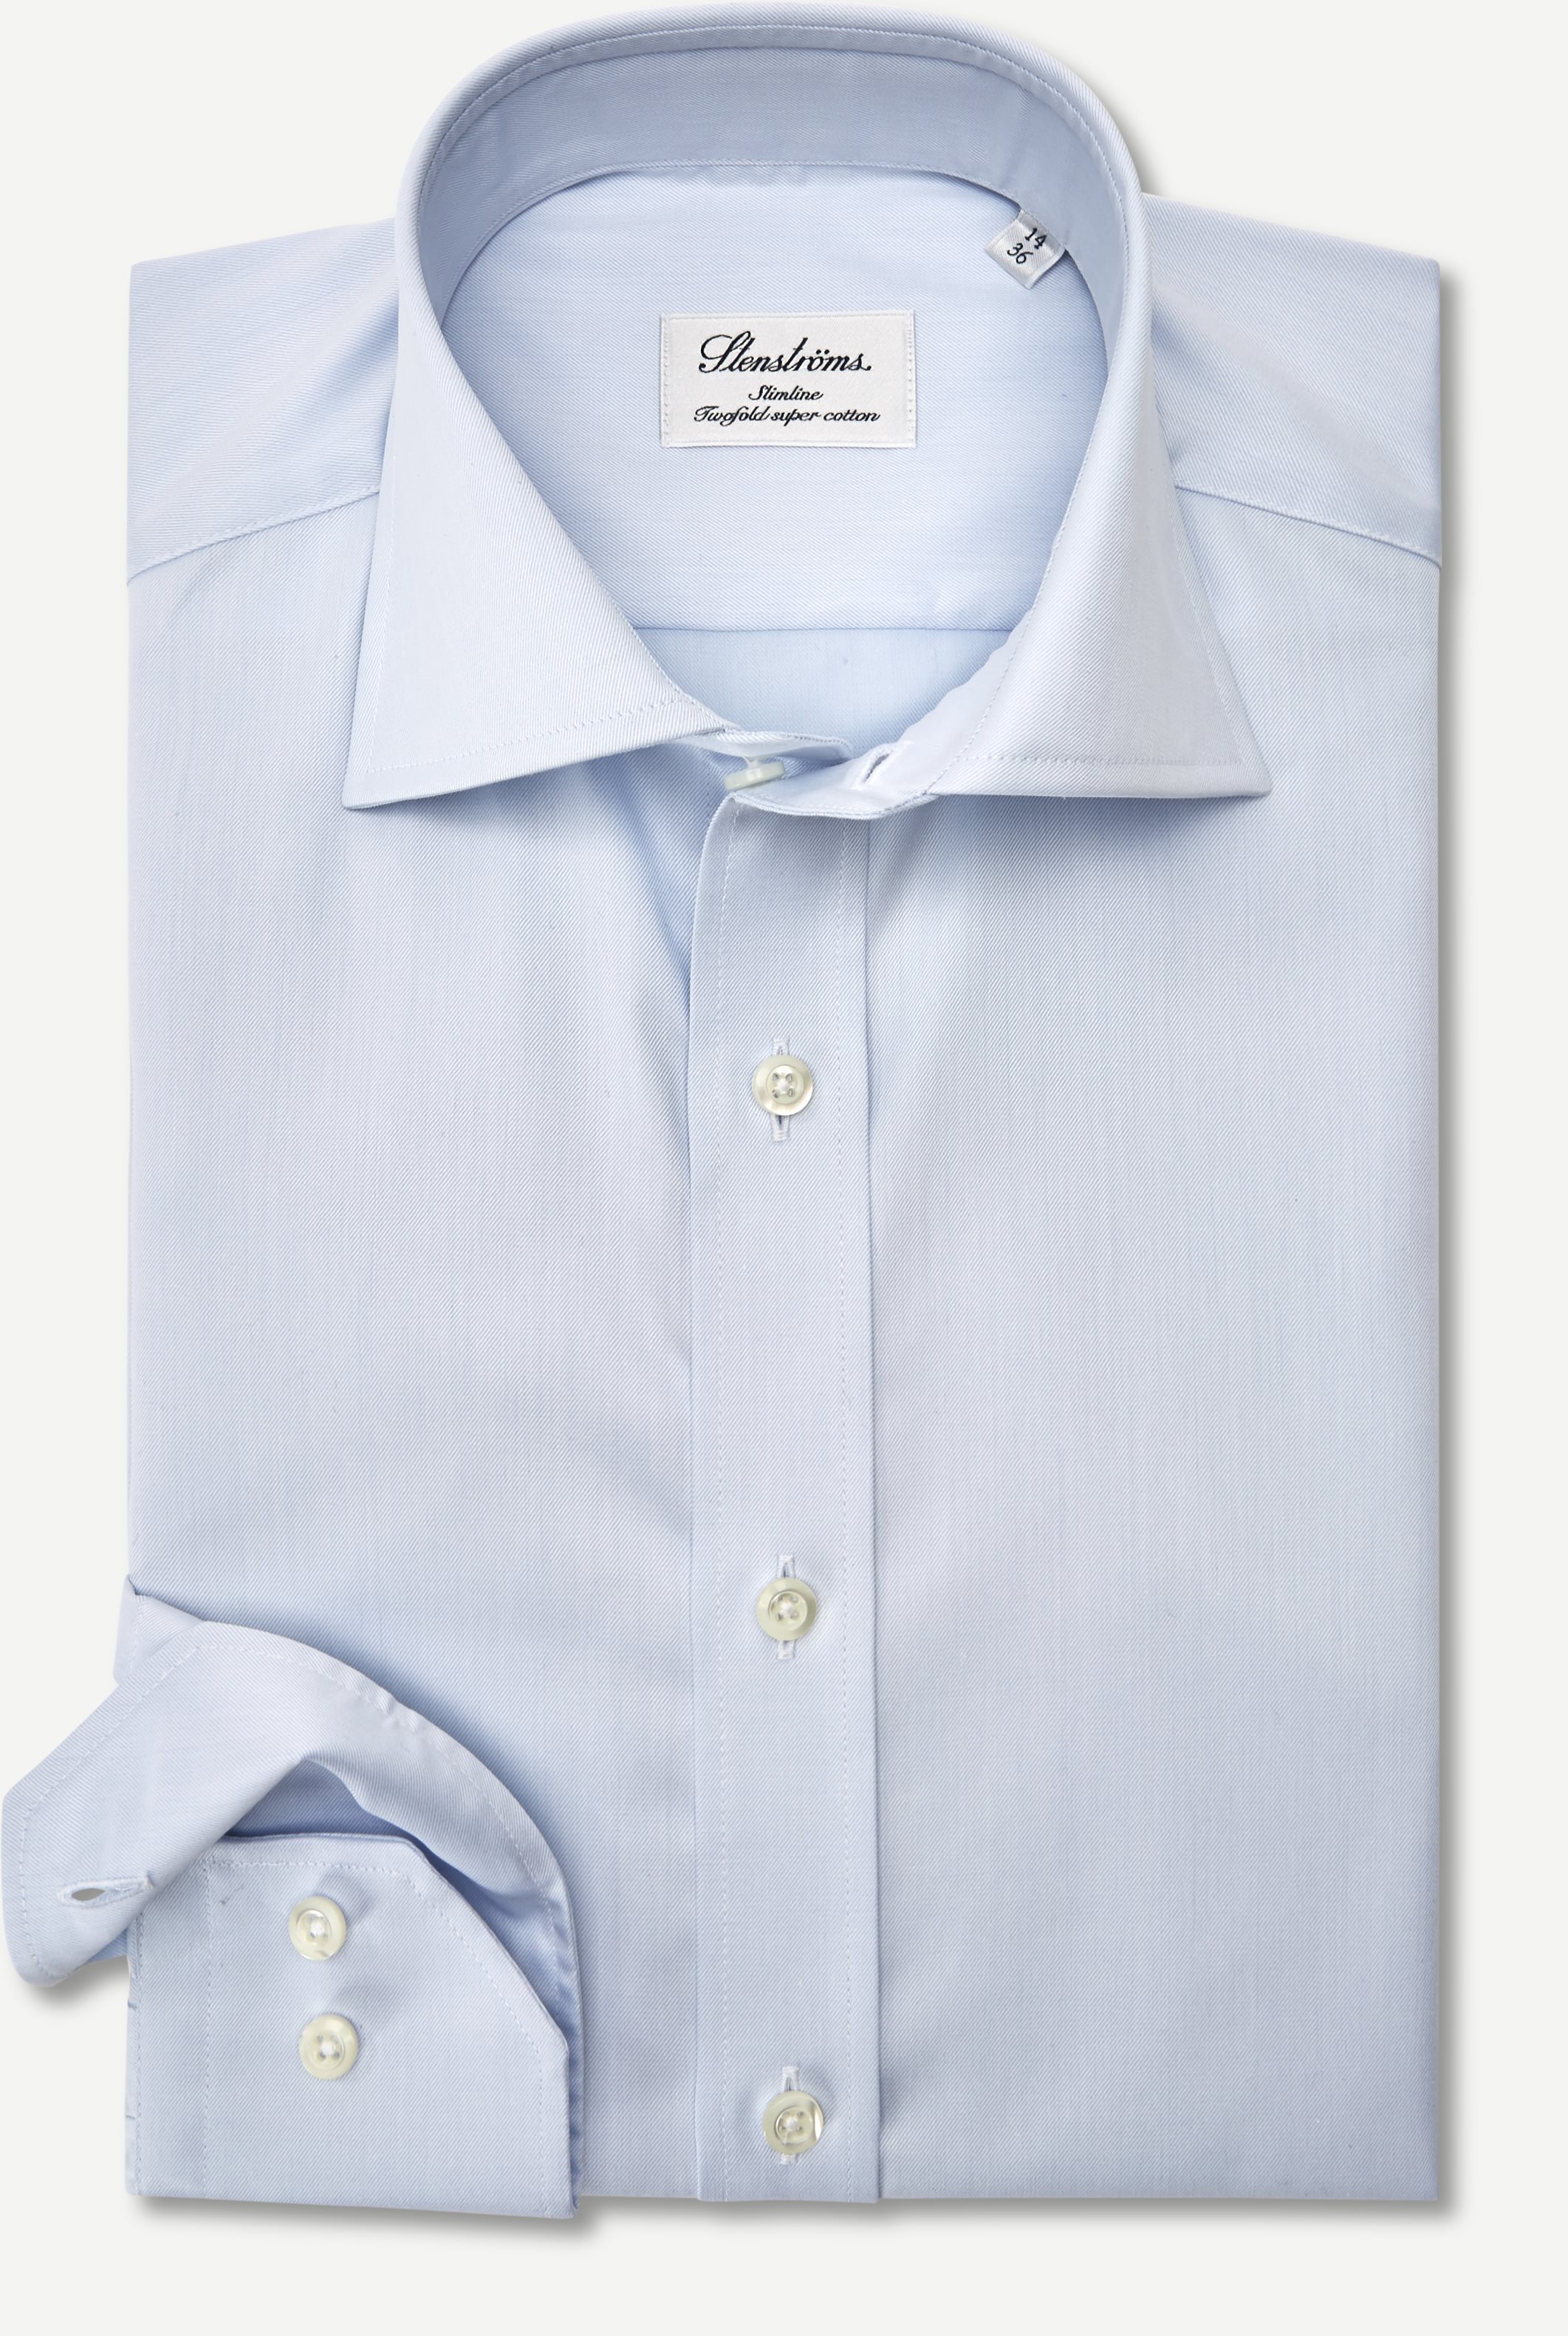 Zweifaches Super-Baumwoll-Hemd - Hemden - Slim fit - Blau